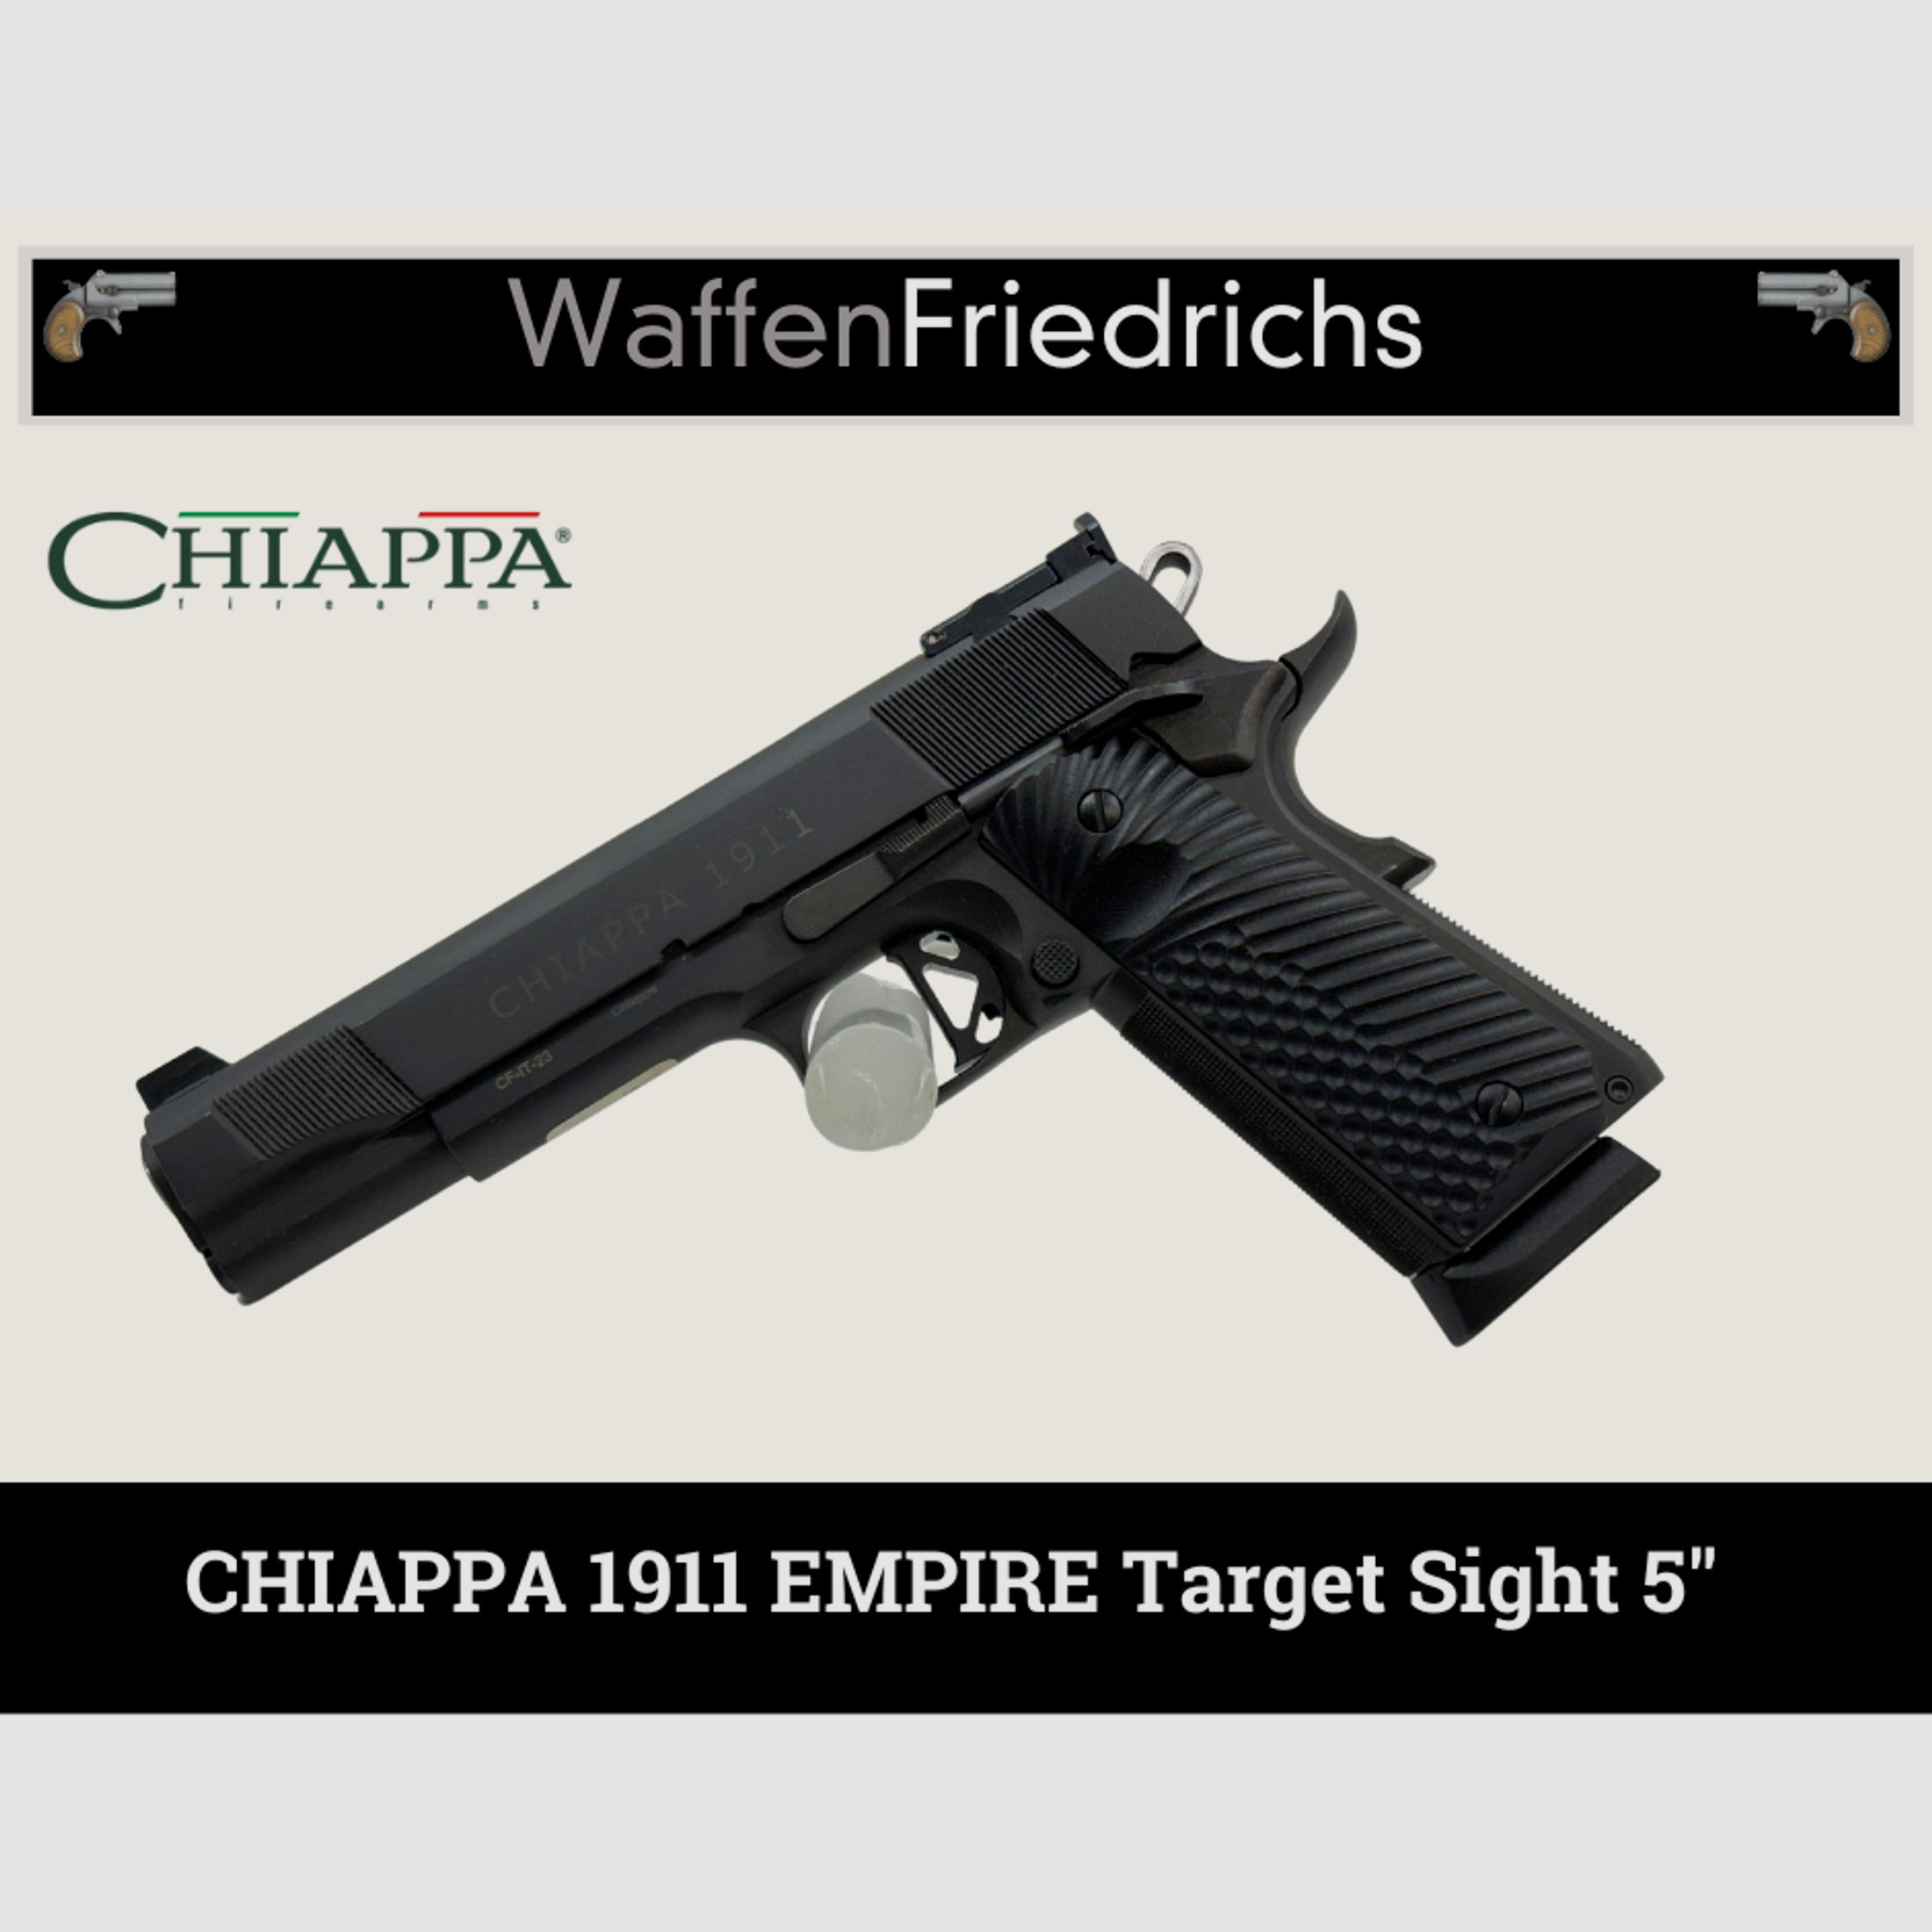 CHIAPPA Empire Target Sight 5" - WaffenFriedrichs